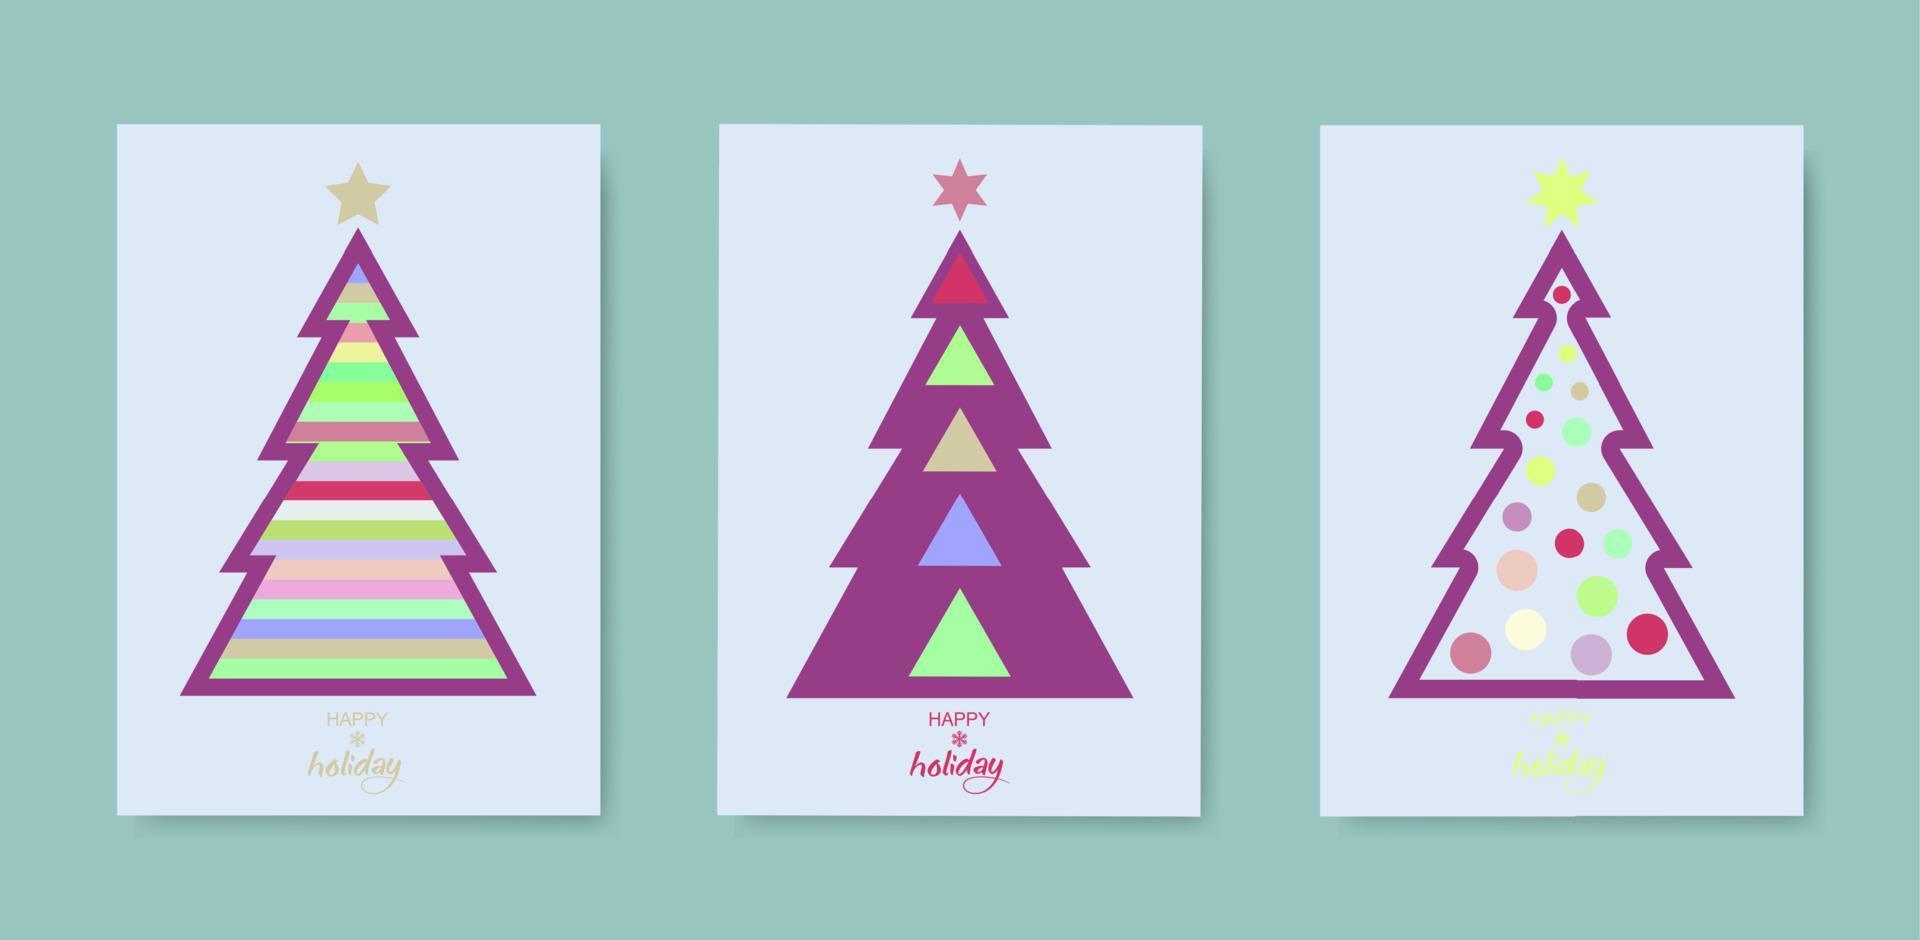 Vintage frohe Feiertagsabdeckungen. Weihnachtsbaum-Set-Karte. Designvorlagen mit Typografie, Saisonwünsche im modernen minimalistischen Stil für Web, Social Media, Print. Pastellfarben auf weißem altem Hintergrund vektor